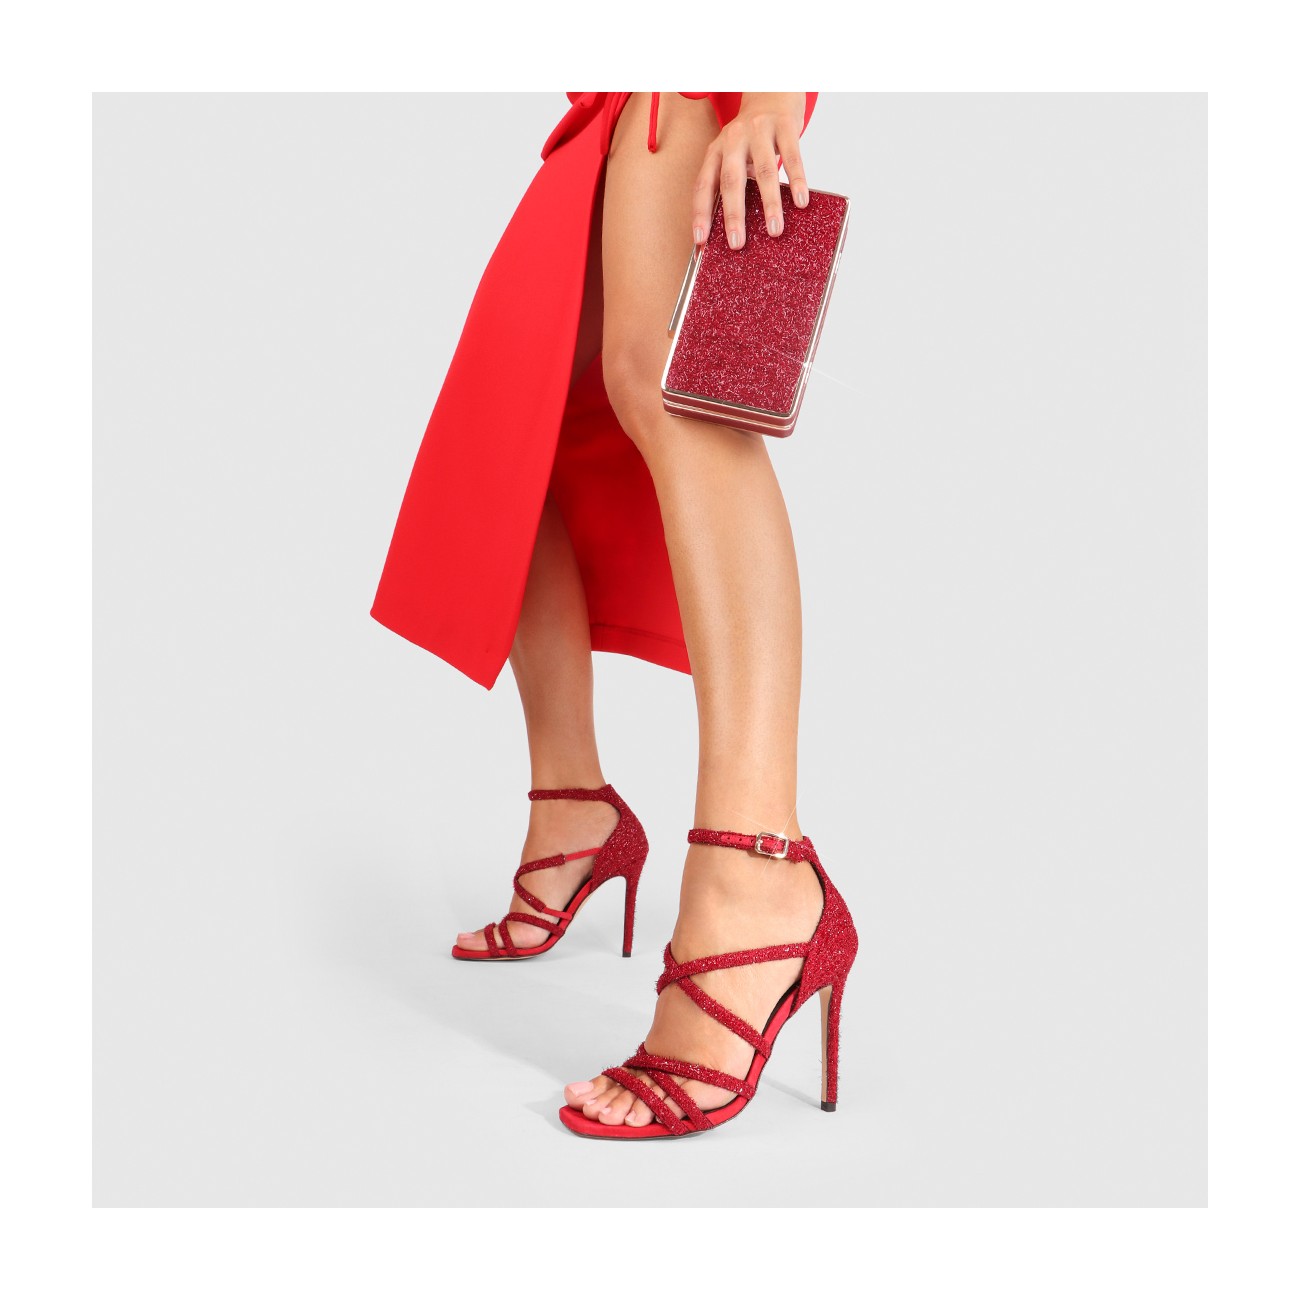 rigidez material Tendencia Sandalias de tacón de mujer en tejido con destellos de color rojo | LODI  Zapatos de mujer online.